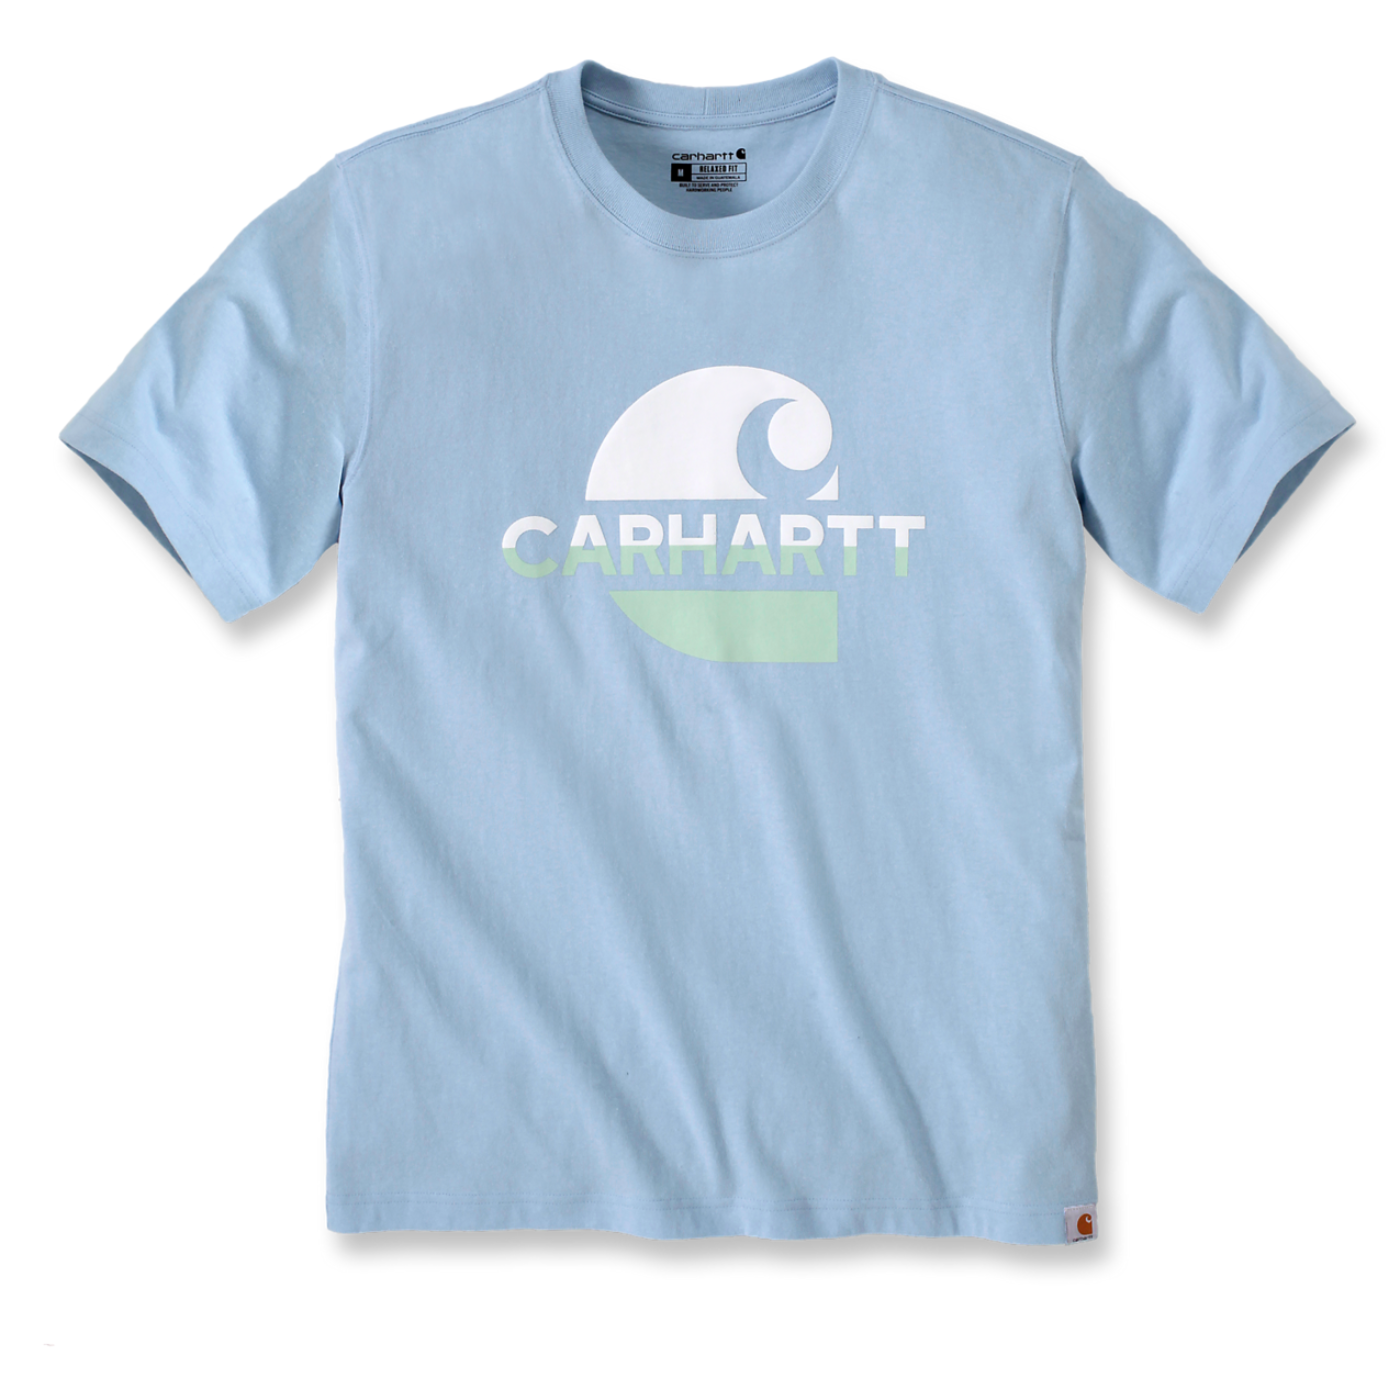 T-shirt com estampado Carhartt